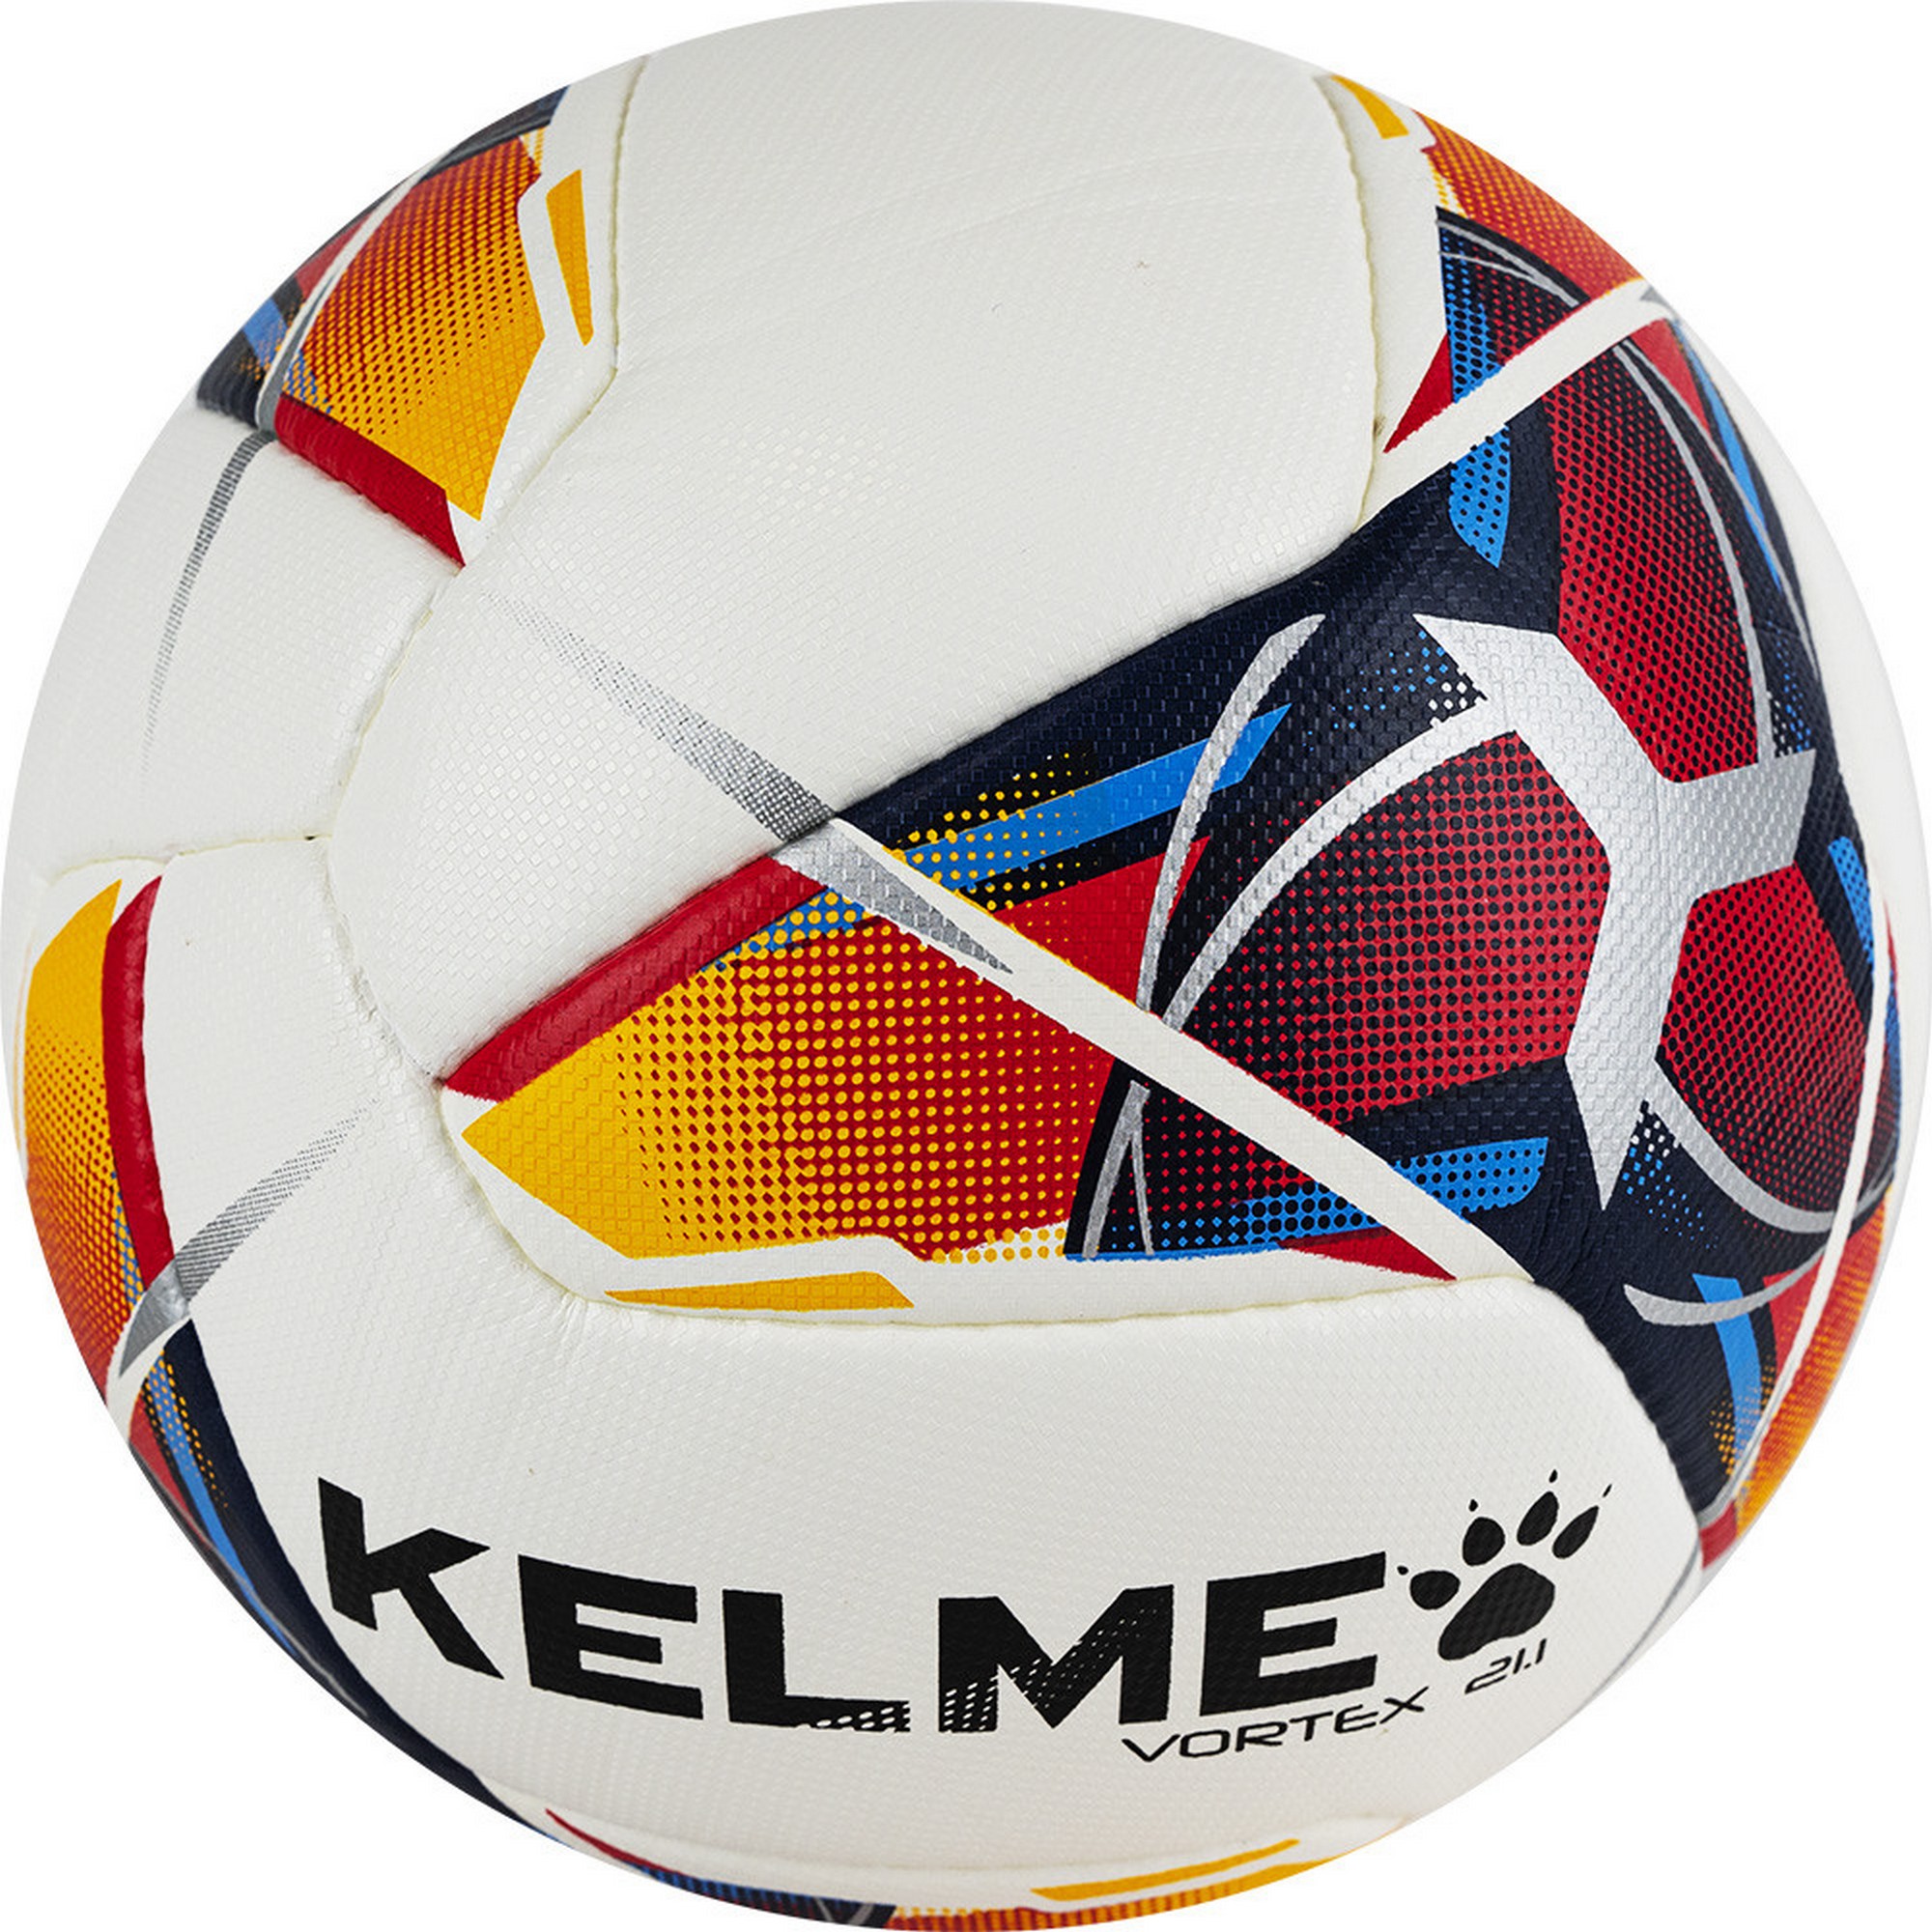 Мяч футбольный Kelme Vortex 21.1, 8101QU5003-423 р.5 2000_2000